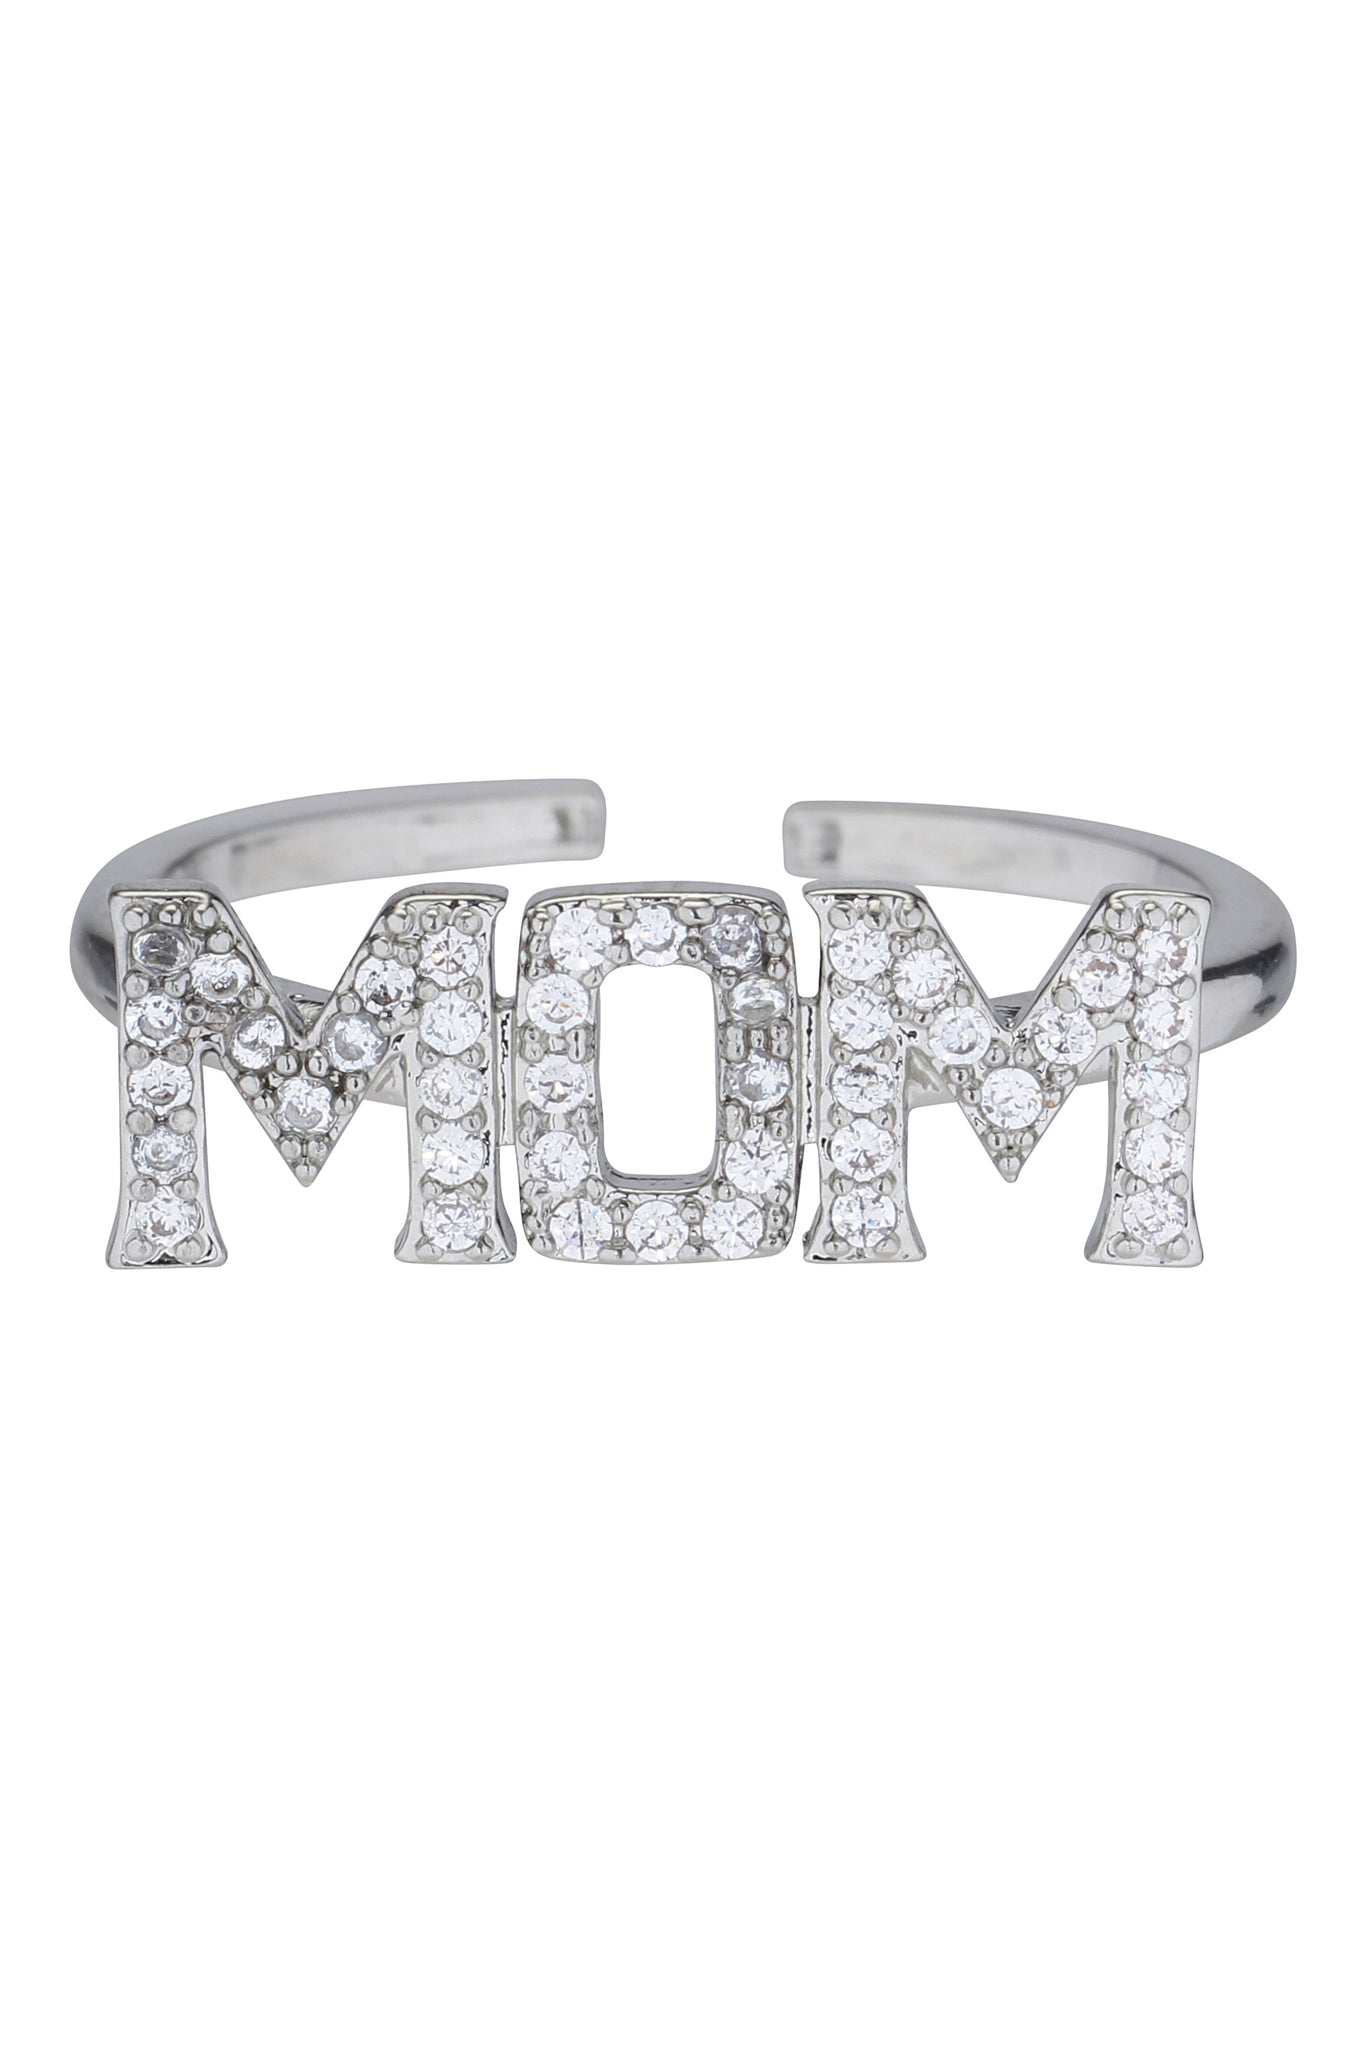 MOM ring with bling stones - forsølvet